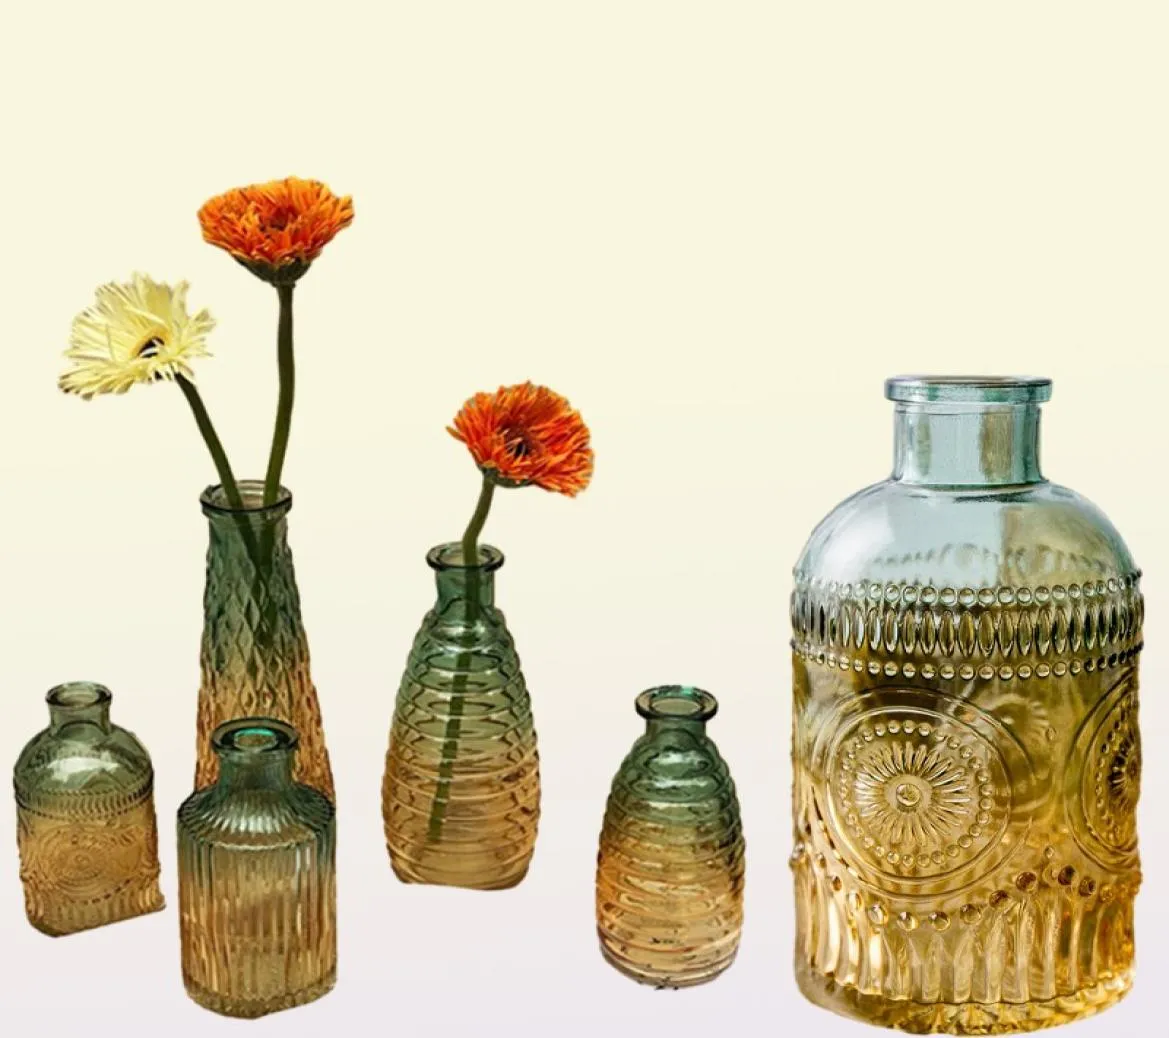 Européen rétro romain Relief Art verre Vase intérieur bureau Table plante fleur décoration de la maison accessoires Transparent verre Vase LJ28118979